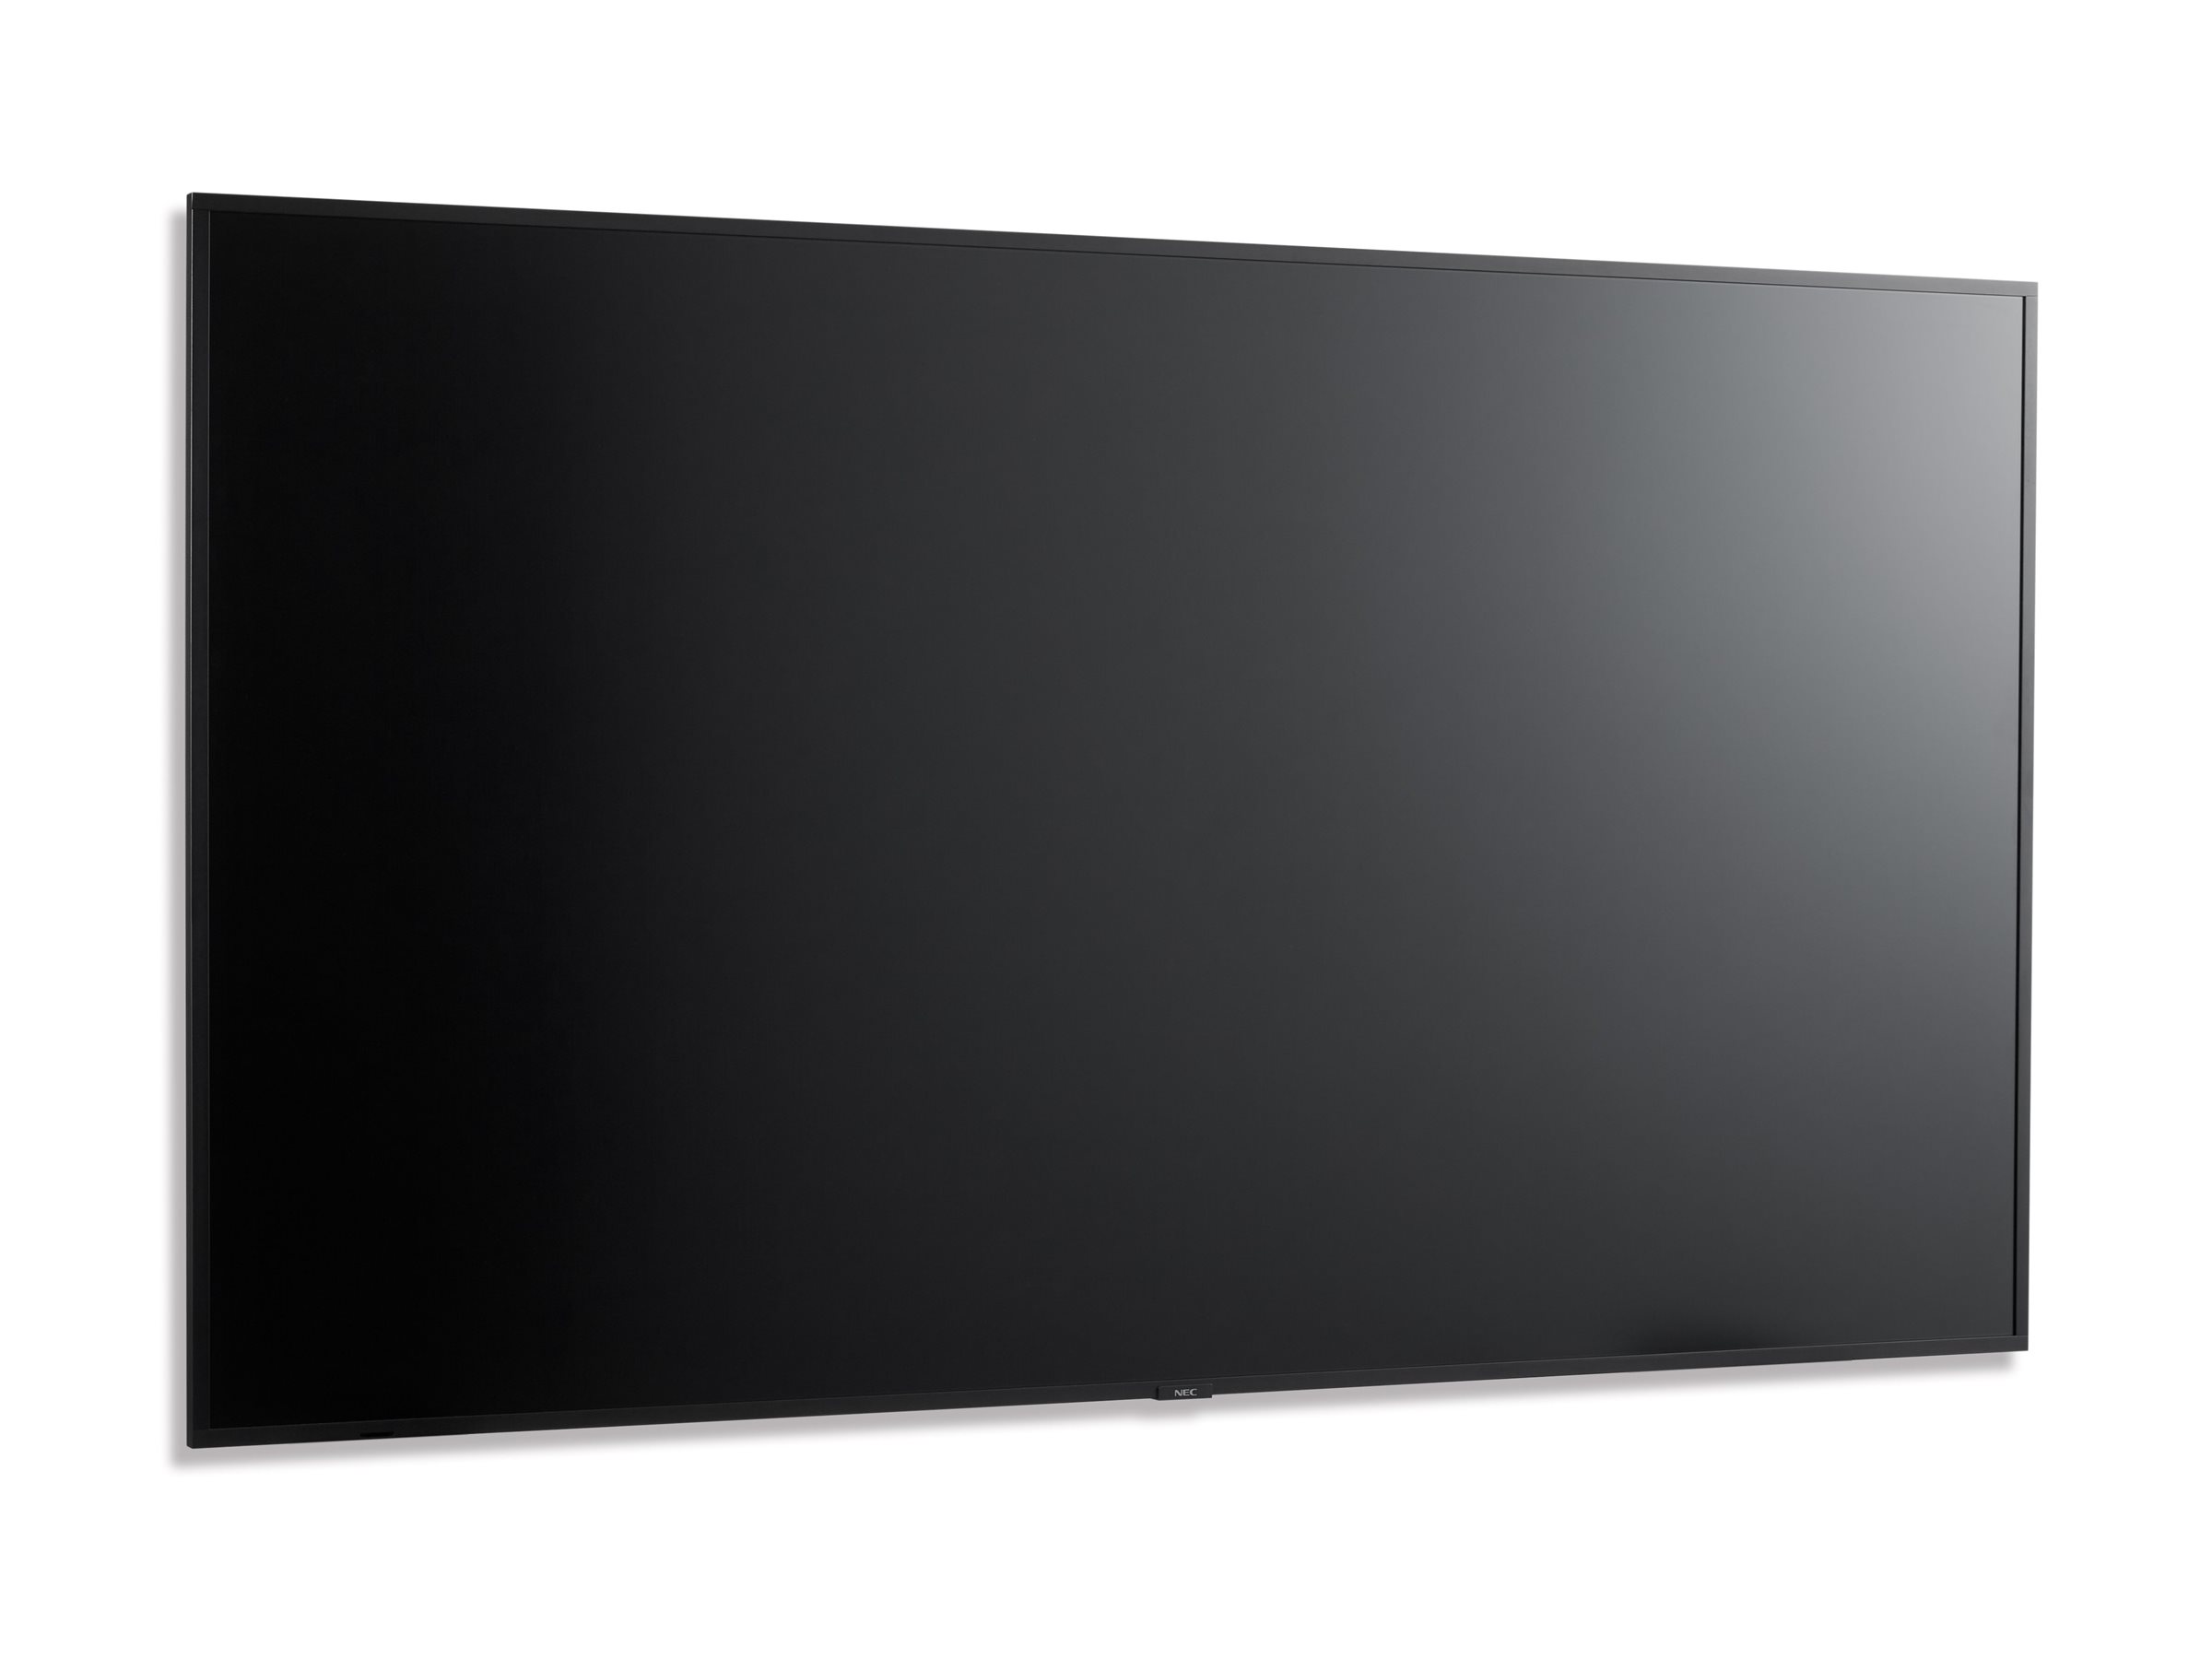 NEC MultiSync M861 - Classe de diagonale 86" M Series écran LCD rétro-éclairé par LED - signalisation numérique - avec lecteur multimédia SoC intégré - 4K UHD (2160p) 3840 x 2160 - Direct LED - noir, pantone 426M - 60005067 - Écrans de signalisation numérique